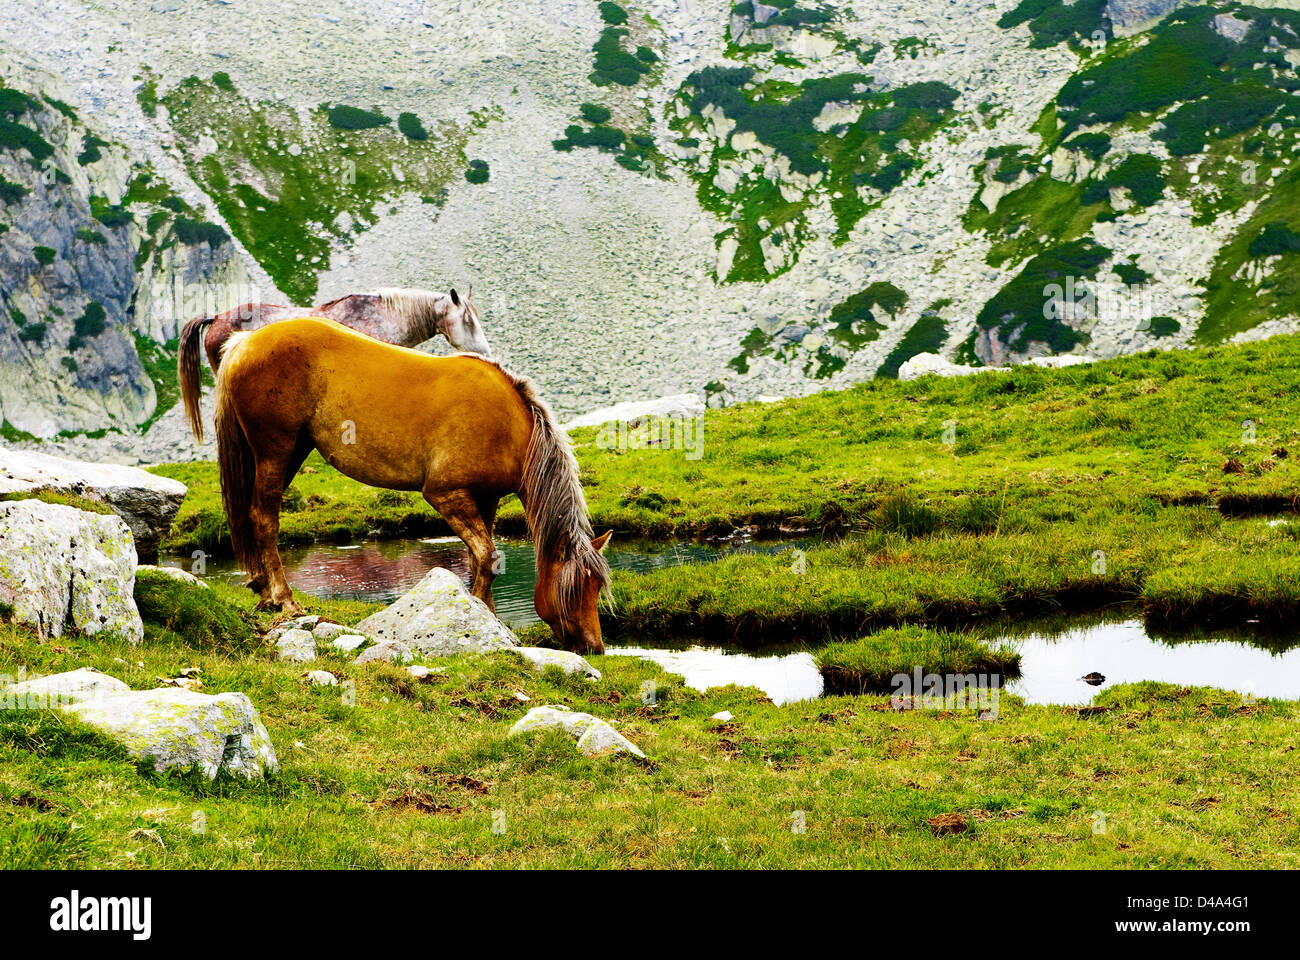 Retezat mountain, Romania: Libero pascolo cavalli nel parco nazionale della Romania Foto Stock